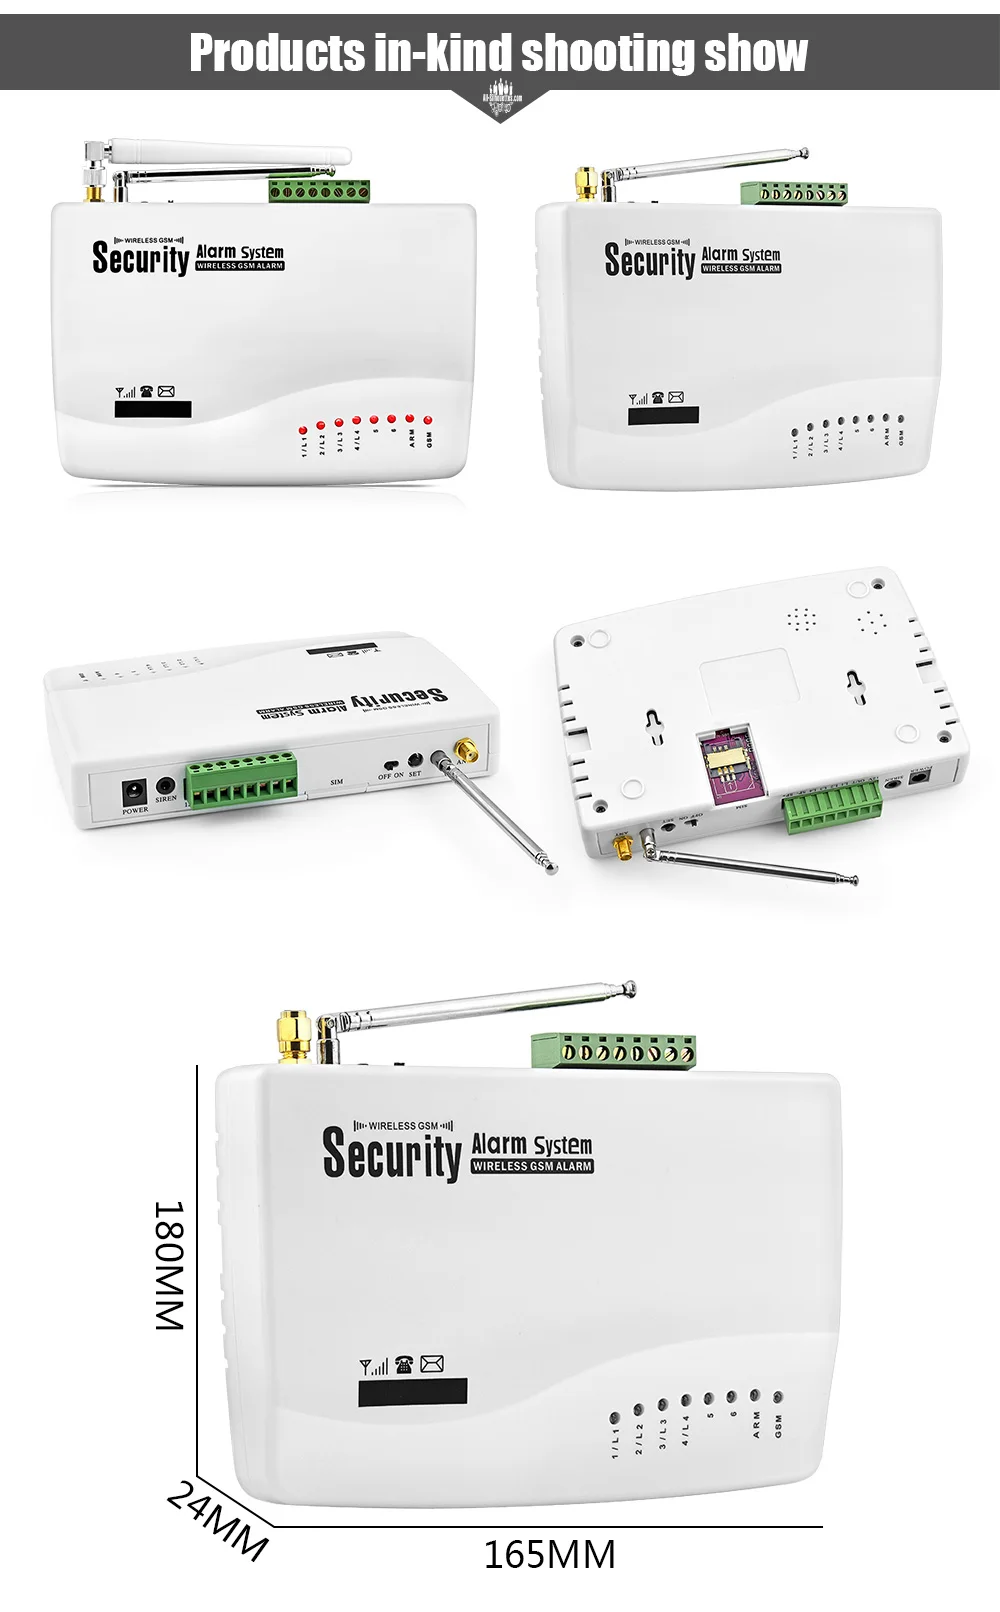 Fuers GSM сигнализация Голосовая подсказка беспроводной дверной датчик движения PIR датчик домашней безопасности SMS сигнализация Пульт